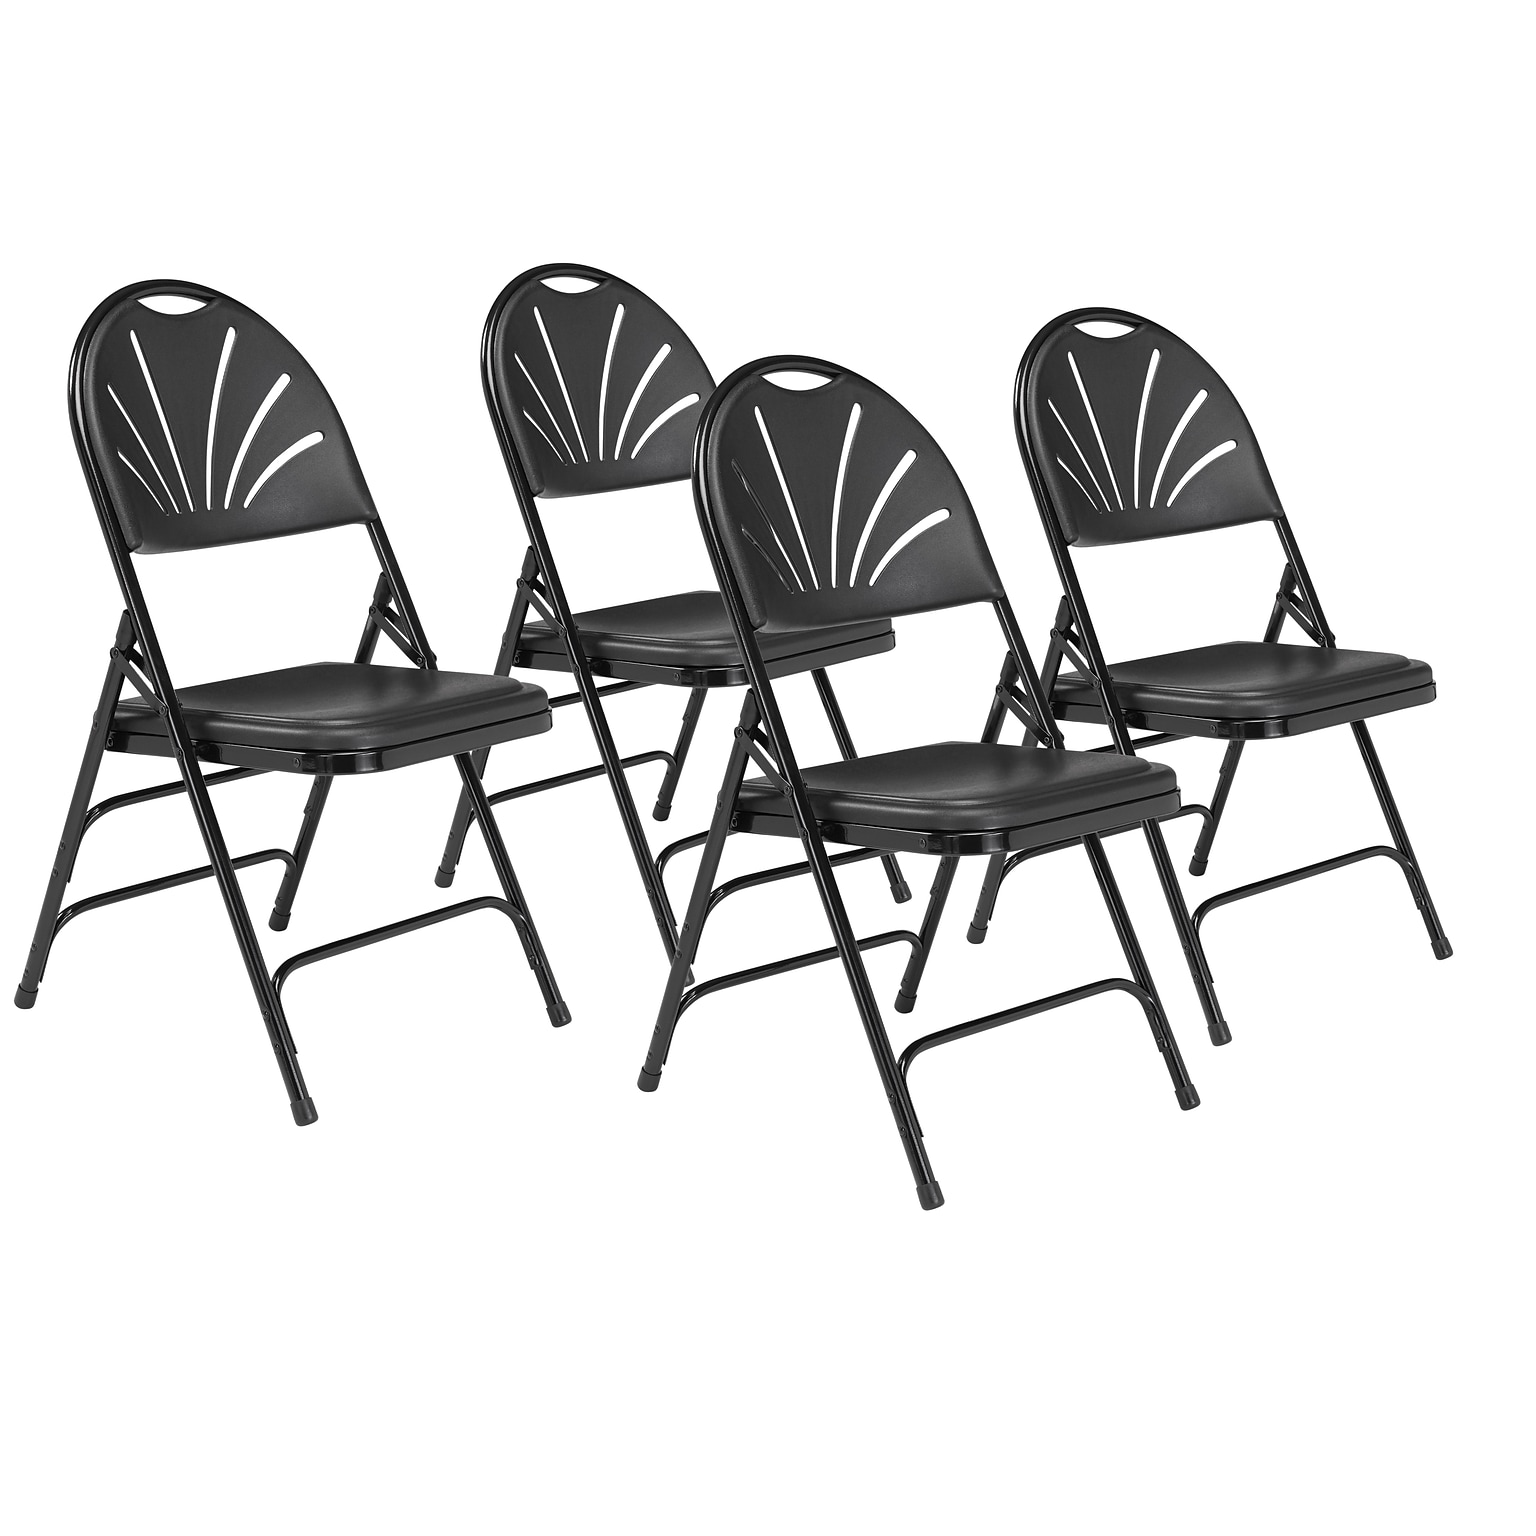 NPS 1100 Series Polyfold Fan Back Triple Brace Double Hinge Folding Chairs, Black/Black, 4/Pack (1110/4)